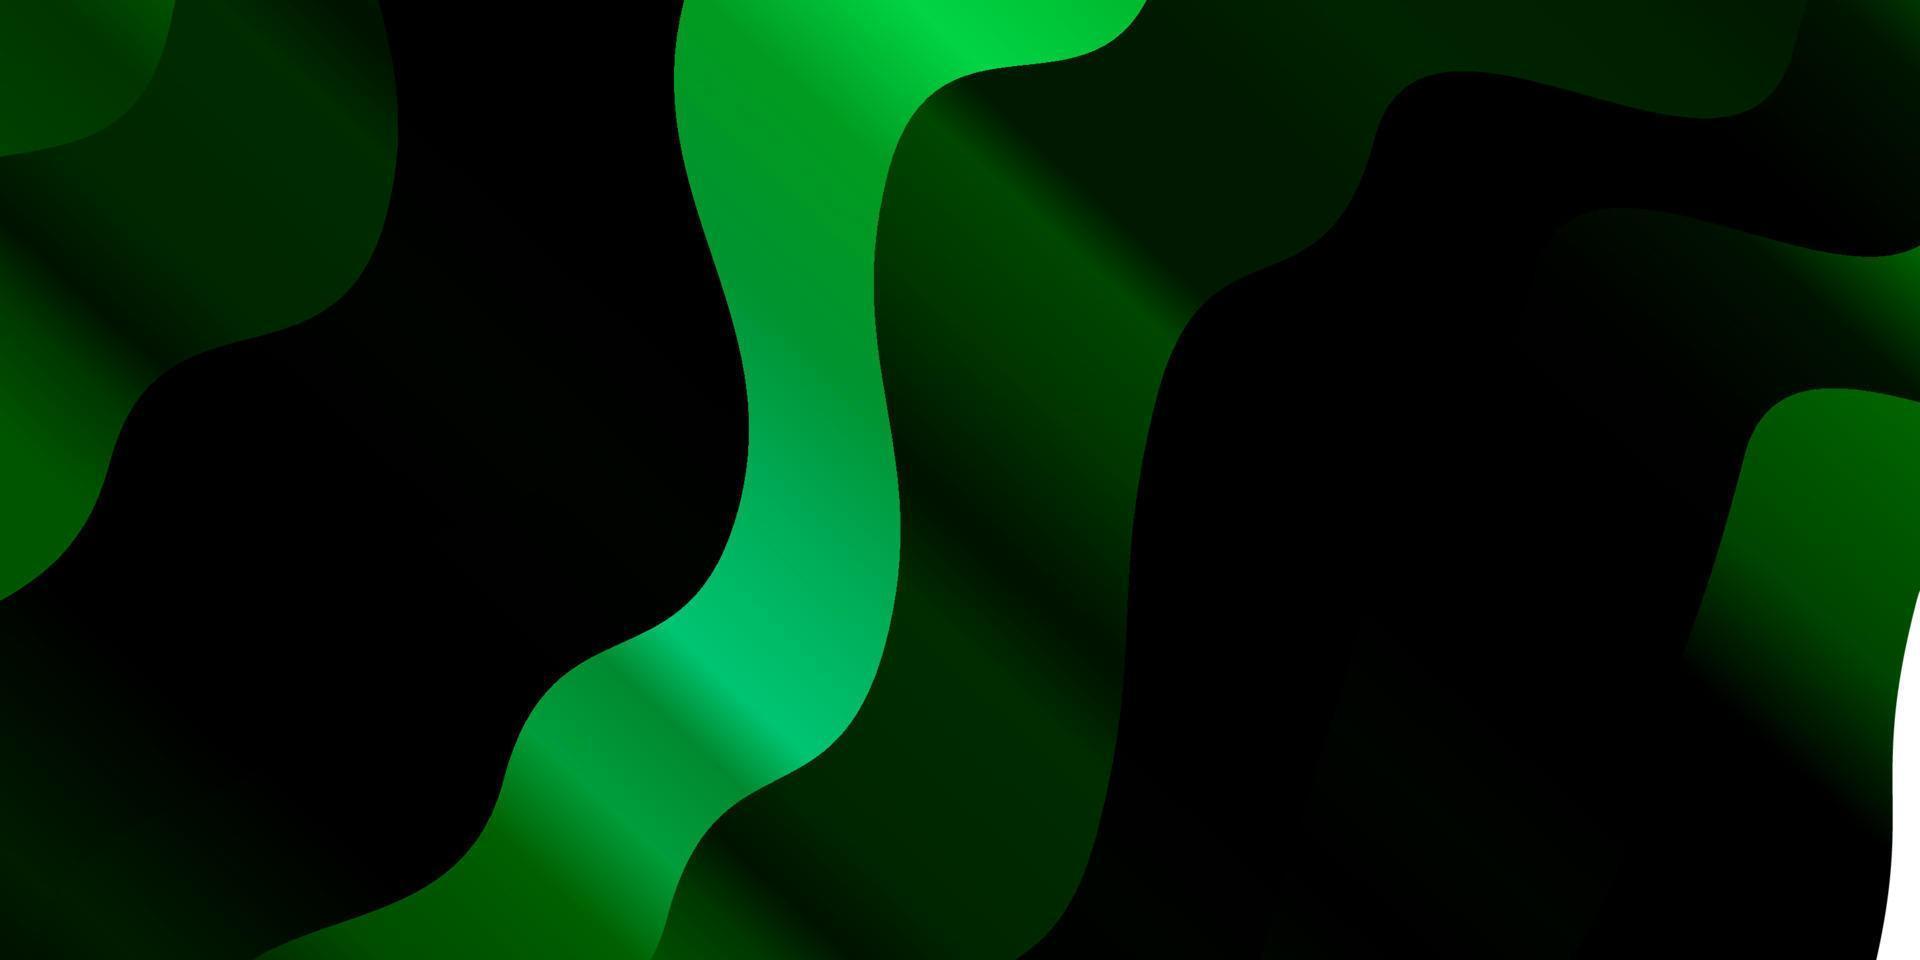 sfondo vettoriale verde scuro con curve.